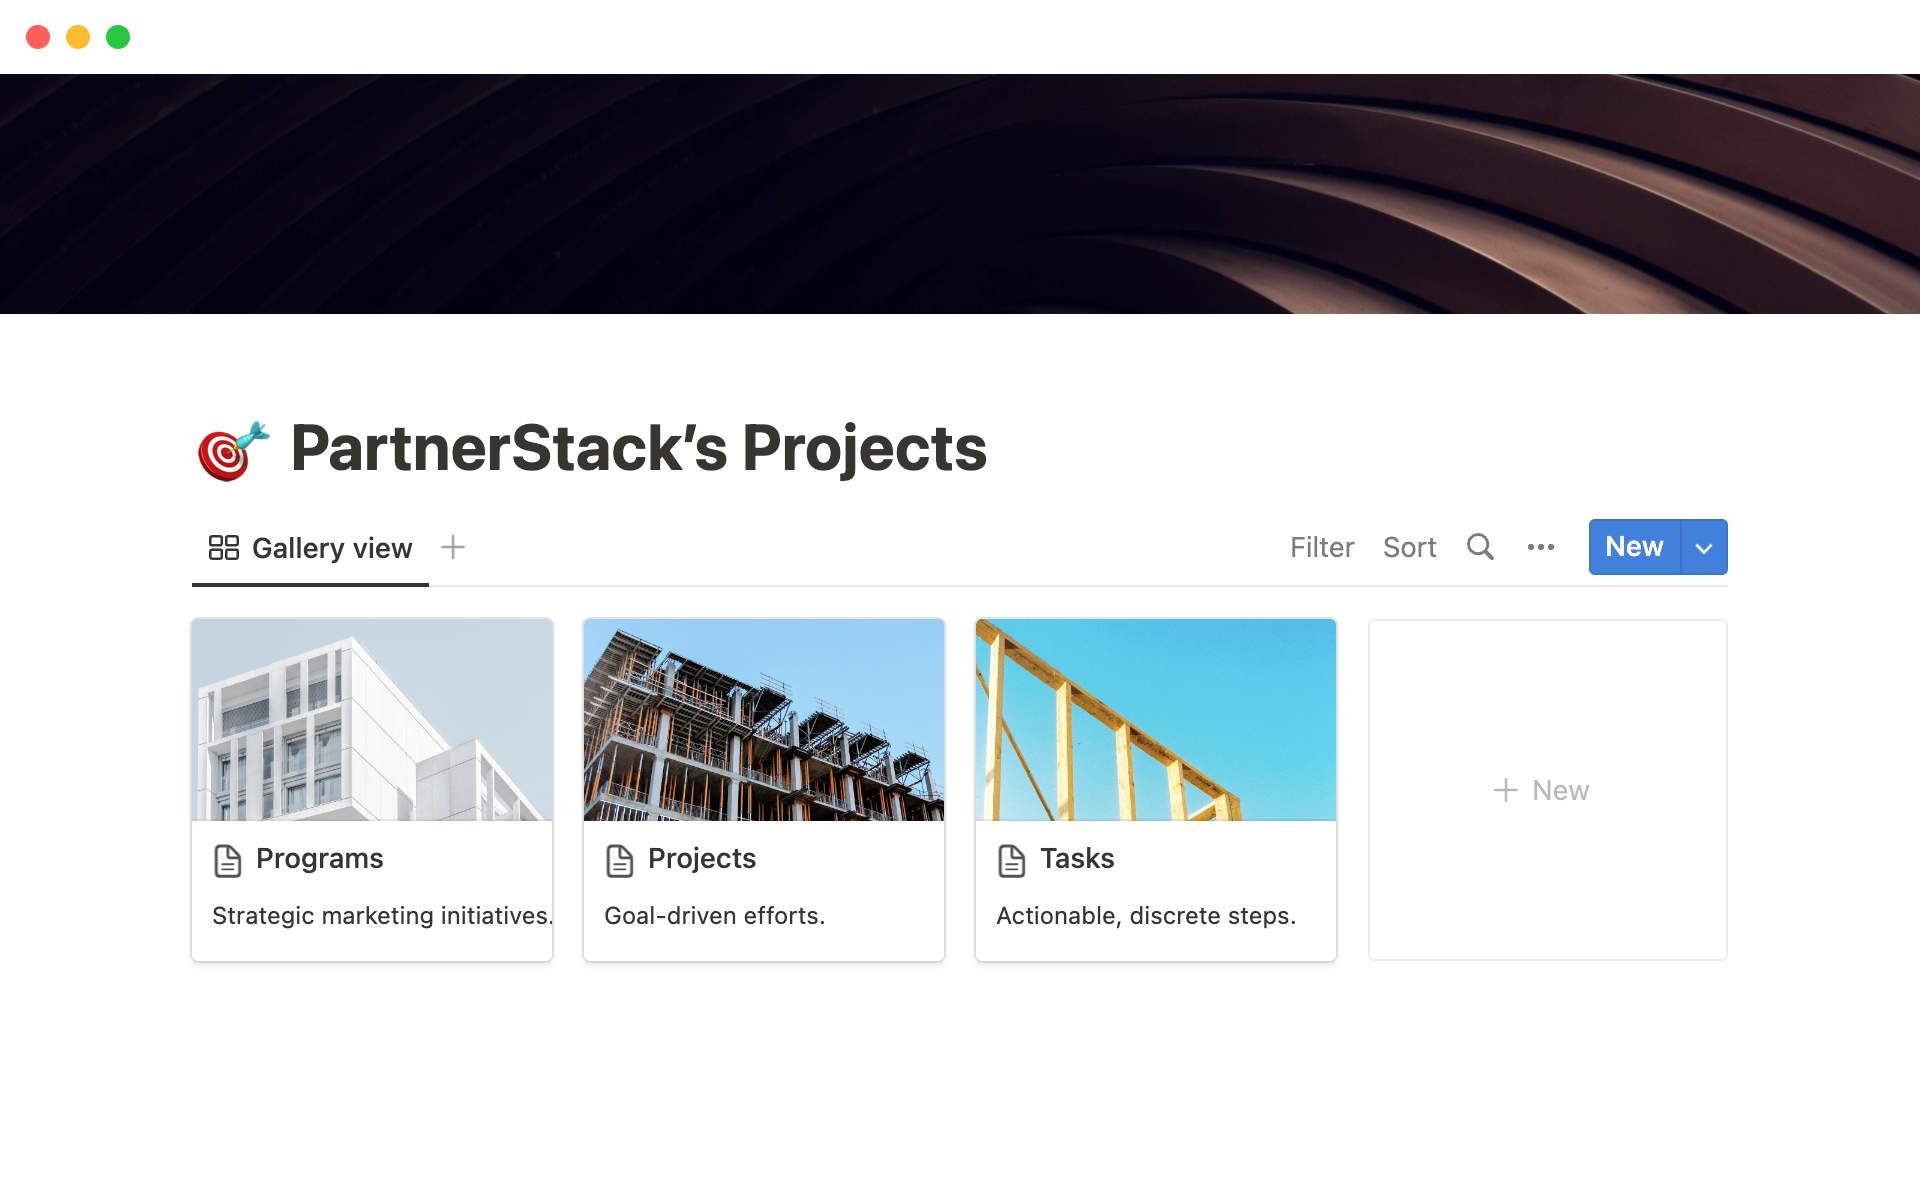 Vista previa de una plantilla para PartnerStack's Projects